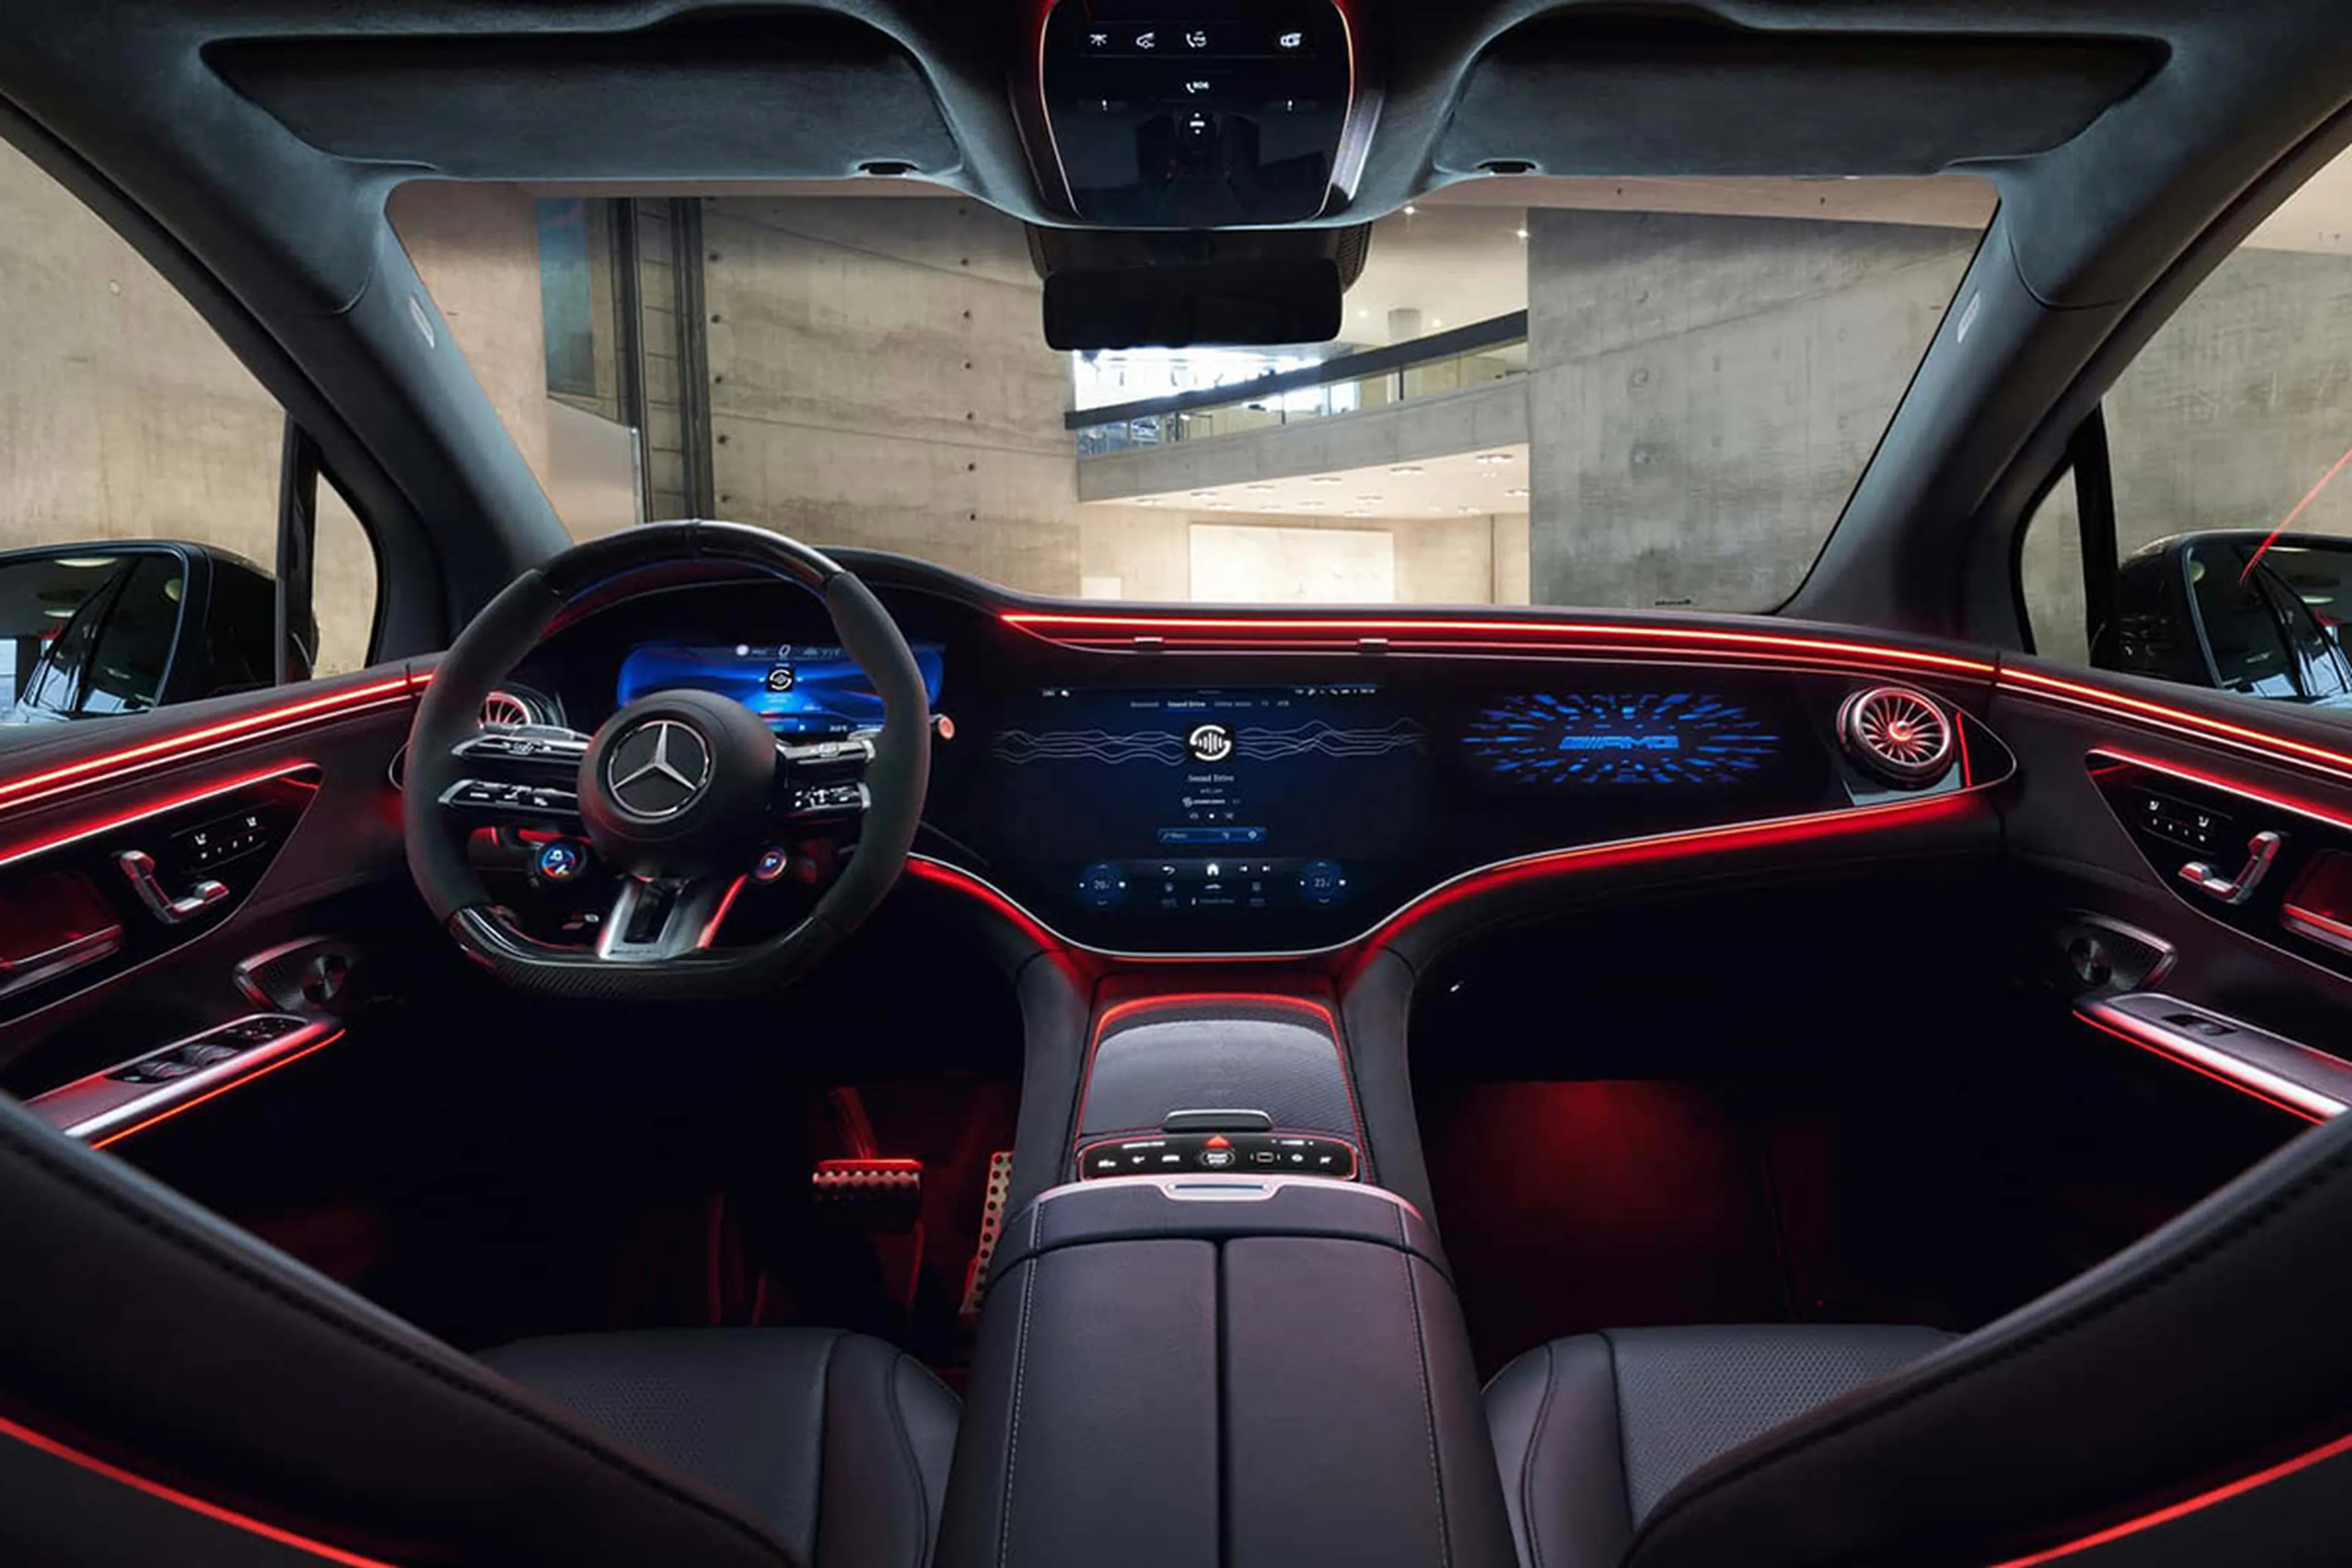 Mercedes se imagina el habitáculo del futuro, con Inteligencia Artificial, juegos a bordo y el coche convertido en un instrumento musical